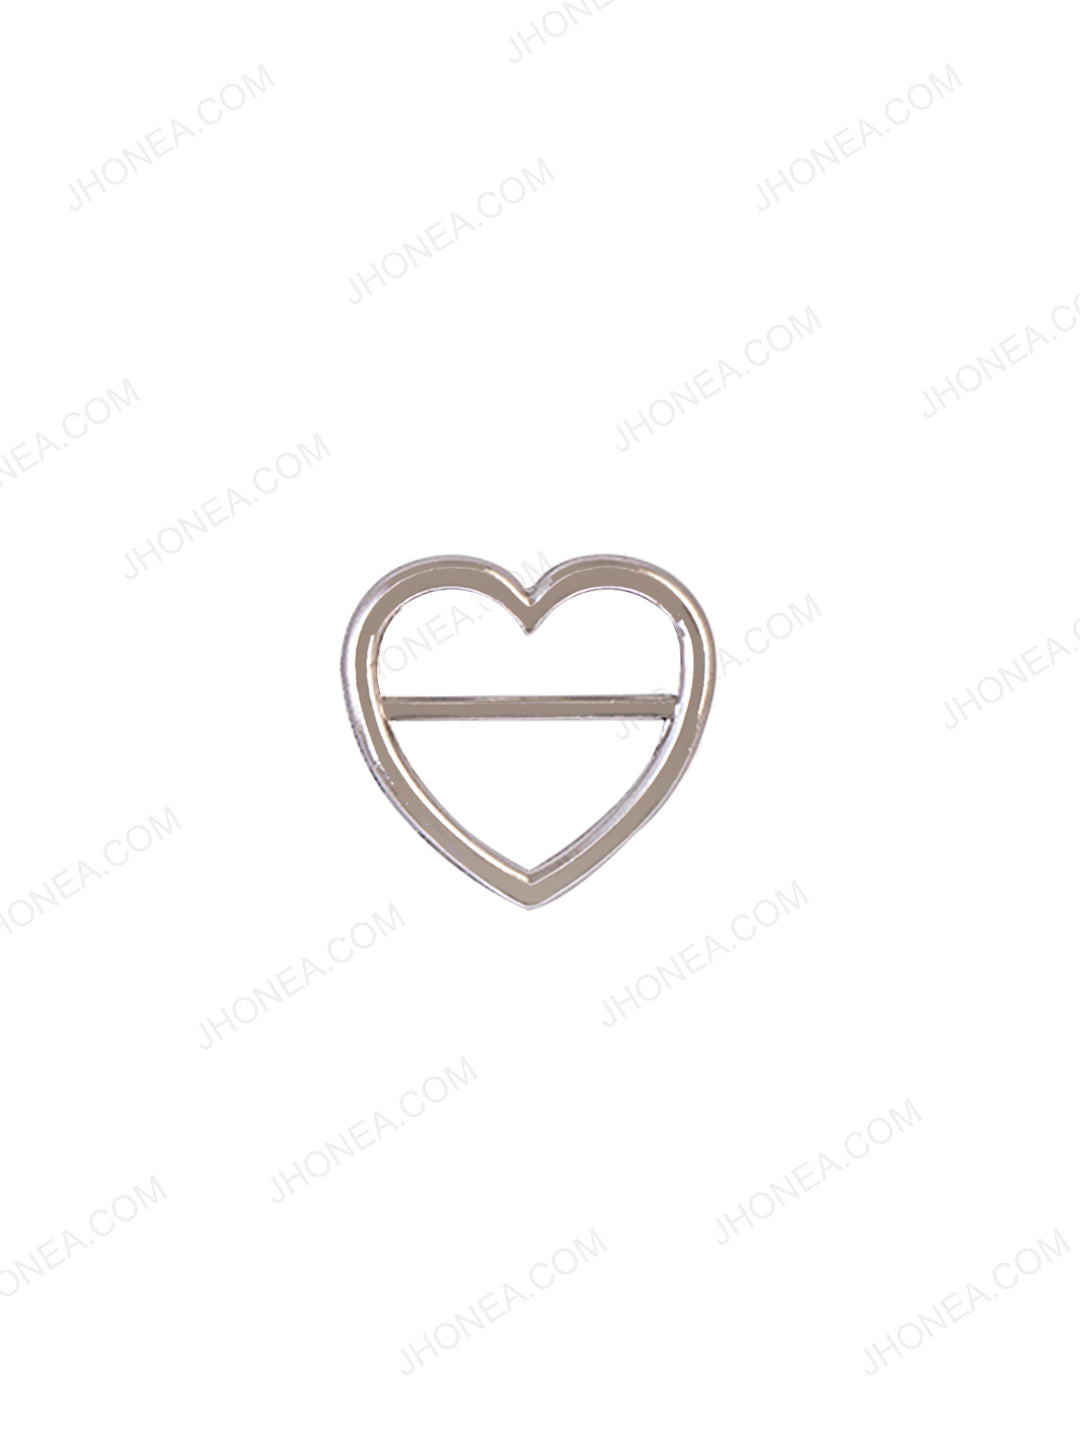  Rivil-Civil Shiny Silver Small Heart Shape Strap Buckle